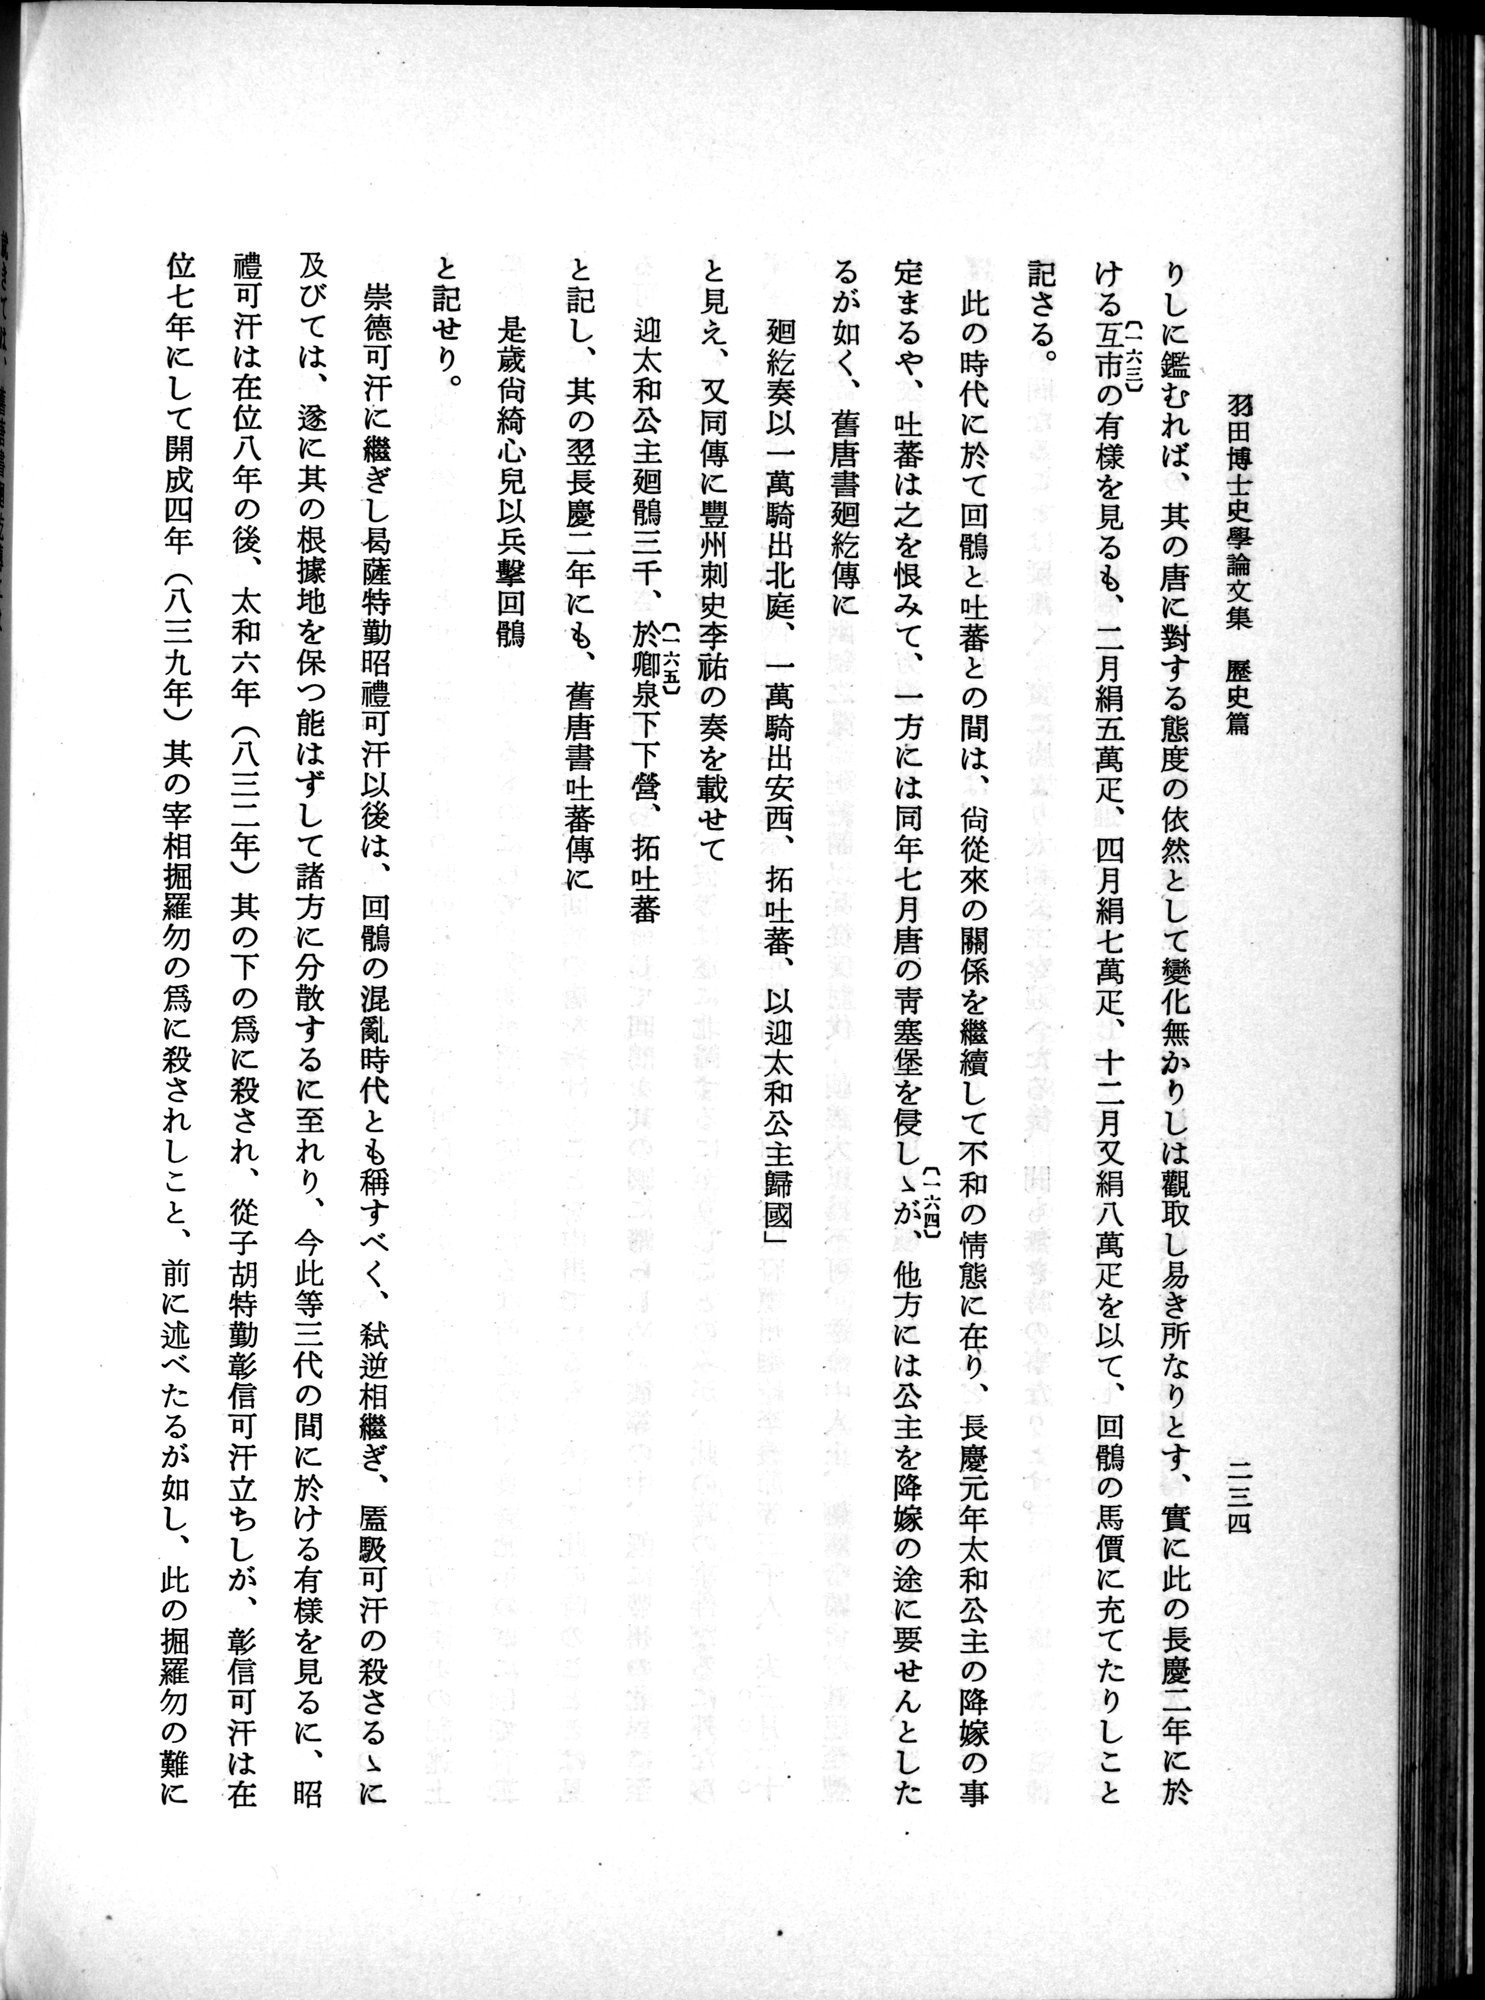 羽田博士史学論文集 : vol.1 / Page 272 (Grayscale High Resolution Image)